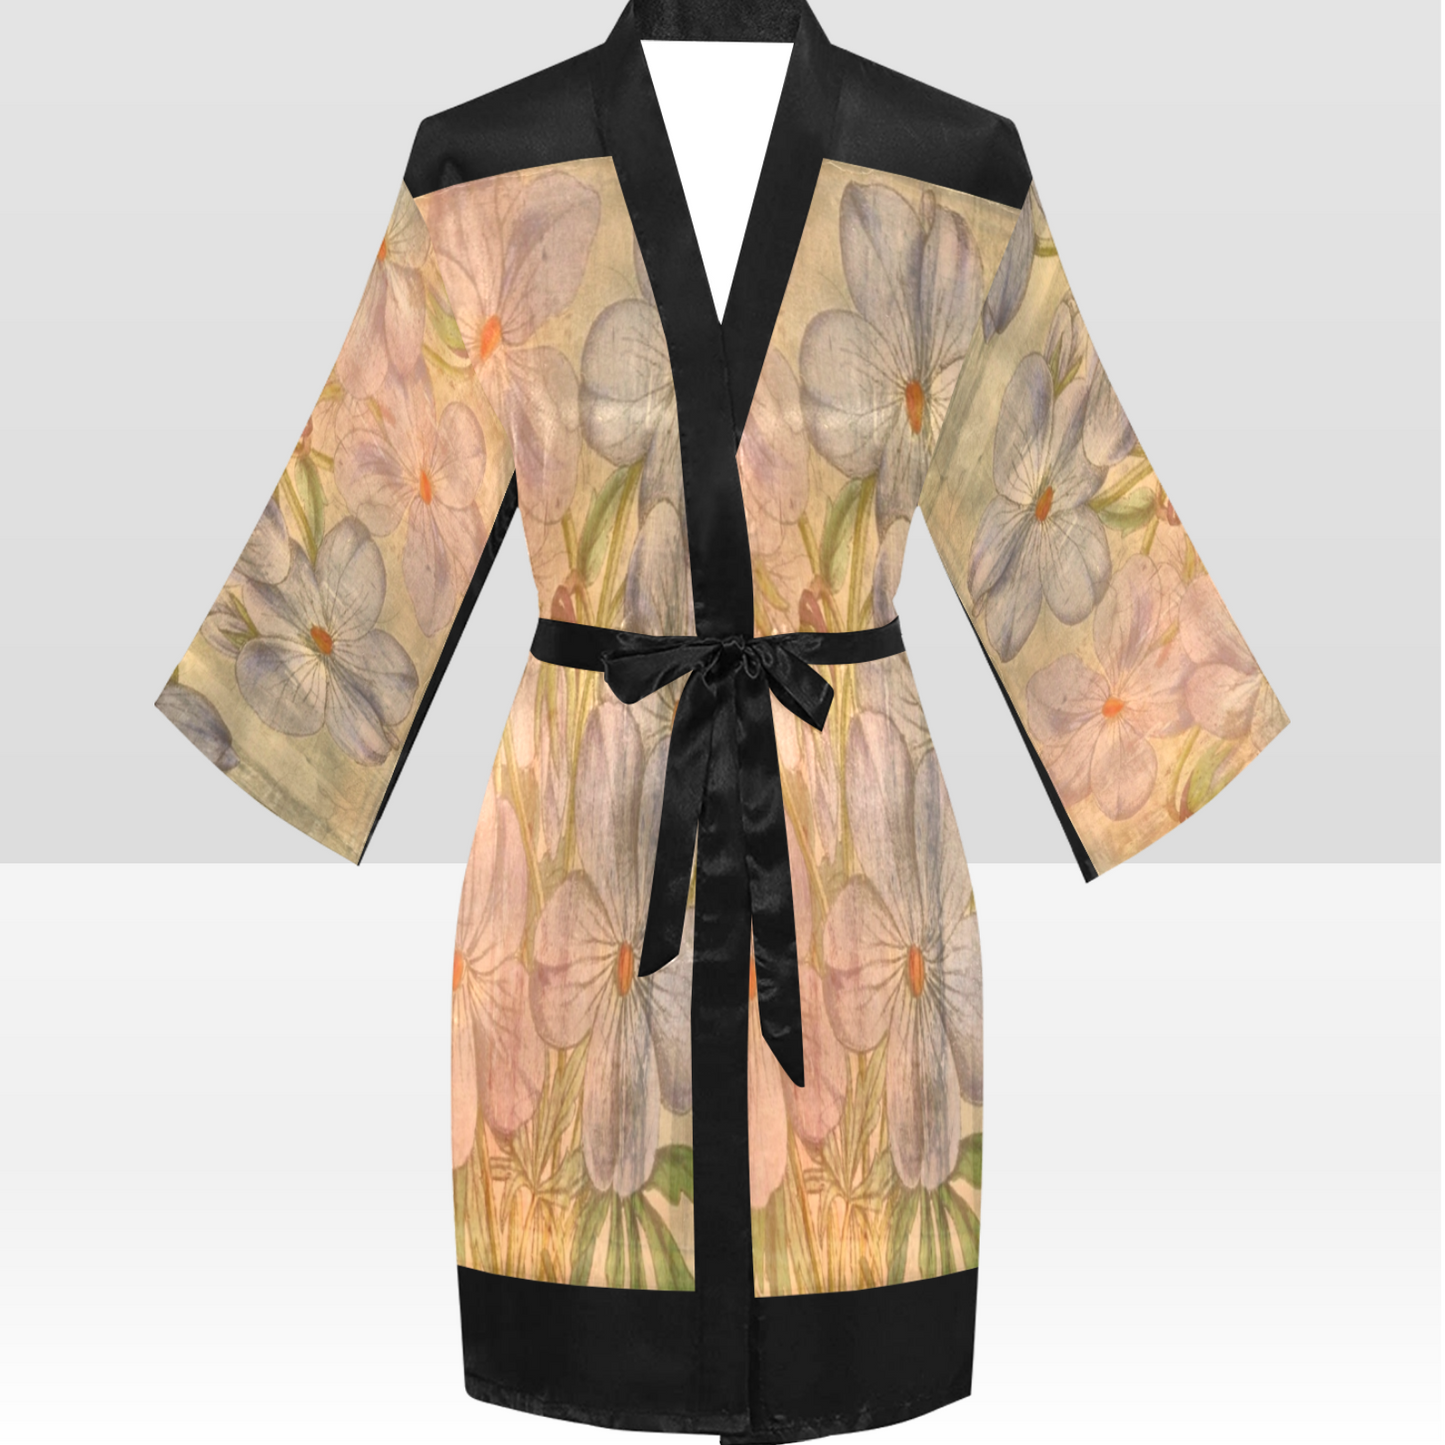 Vintage Floral Kimono Robe, Black or White Trim, Sizes XS to 2XL, Design 13xx